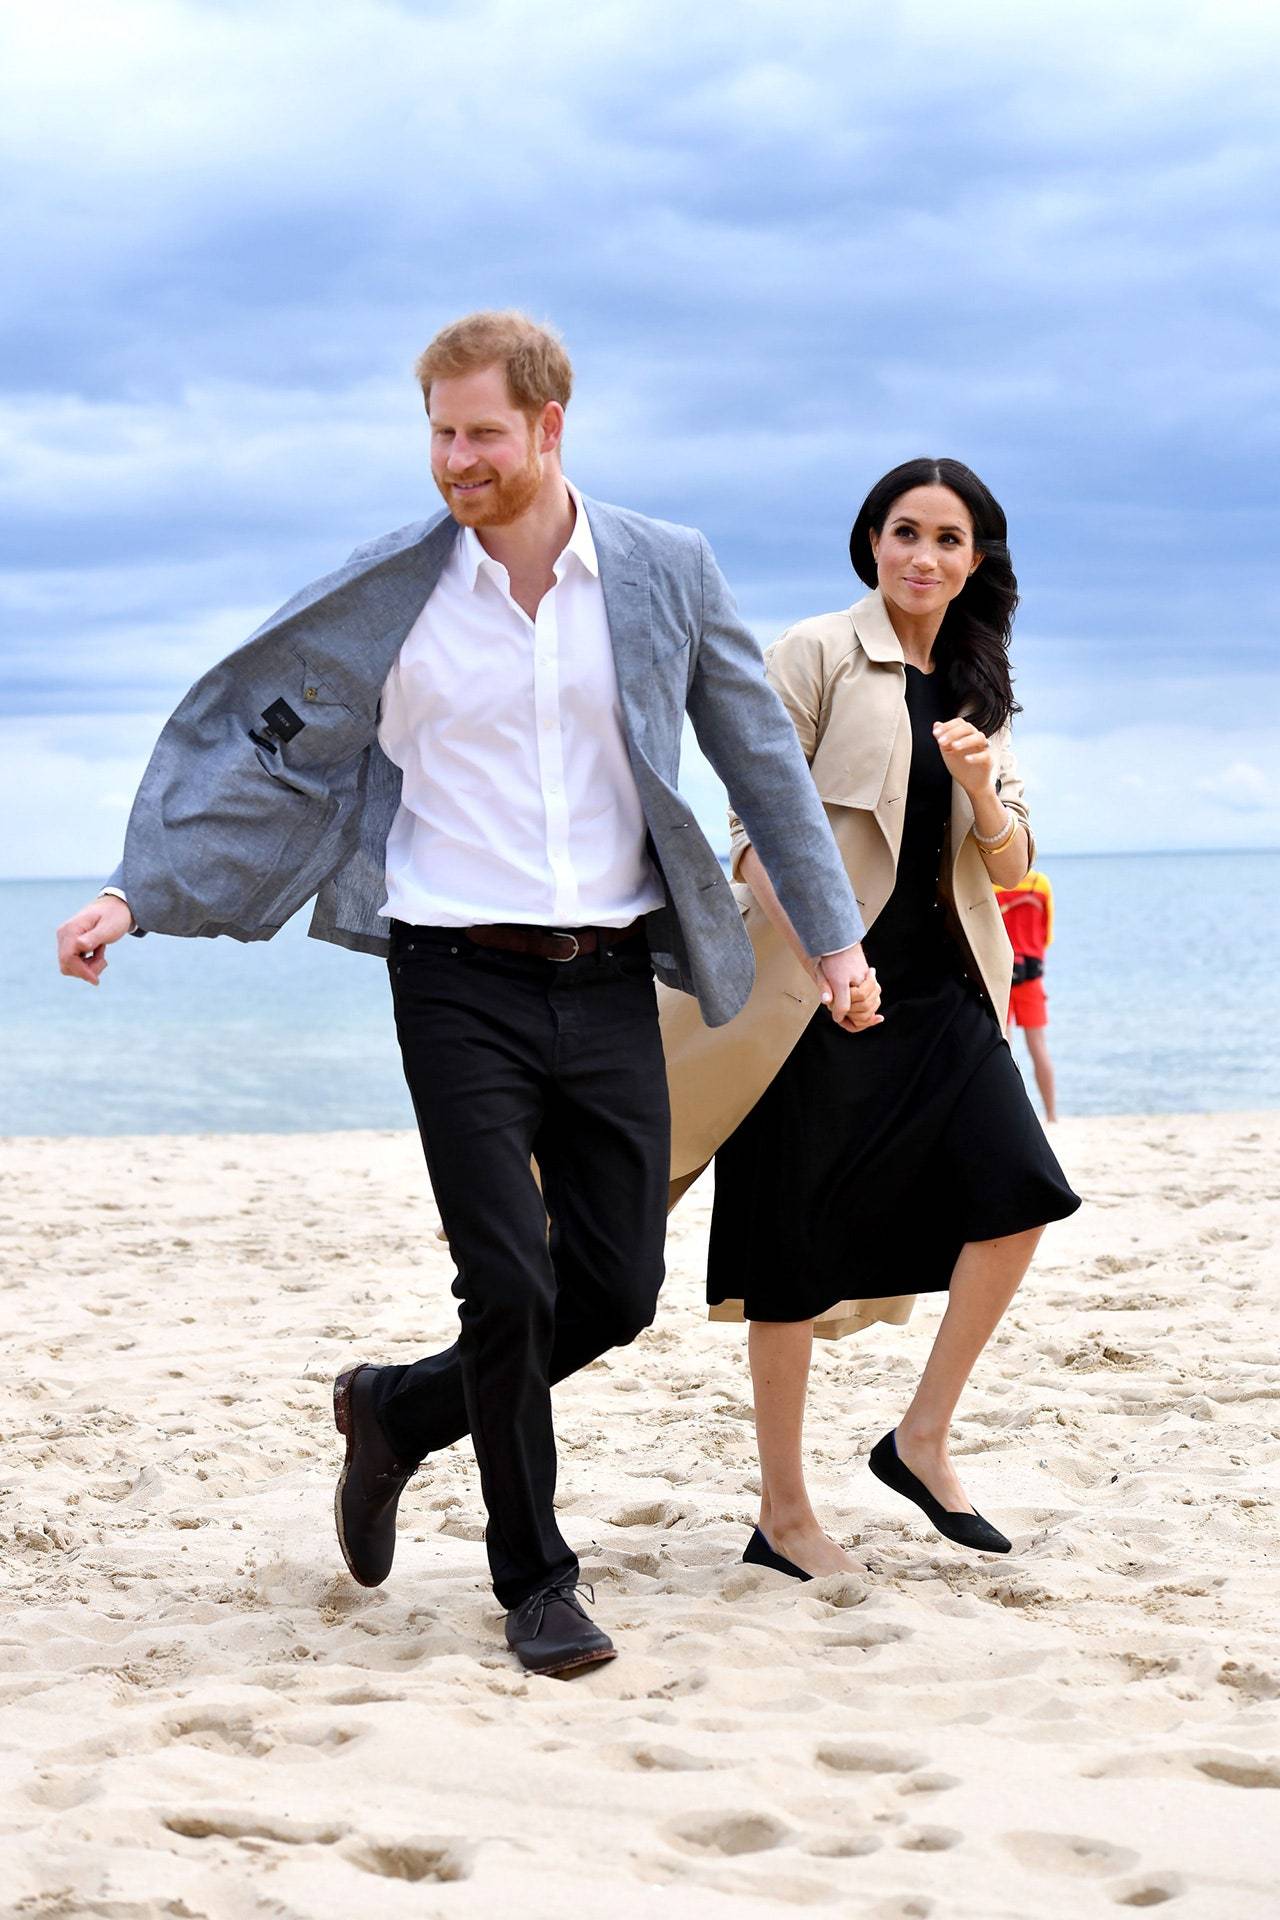 Księżna w płaskich czółenkach marki Rothy’s razem z Harrym na plaży w Australii w 2018 roku. (Fot. Getty Images)